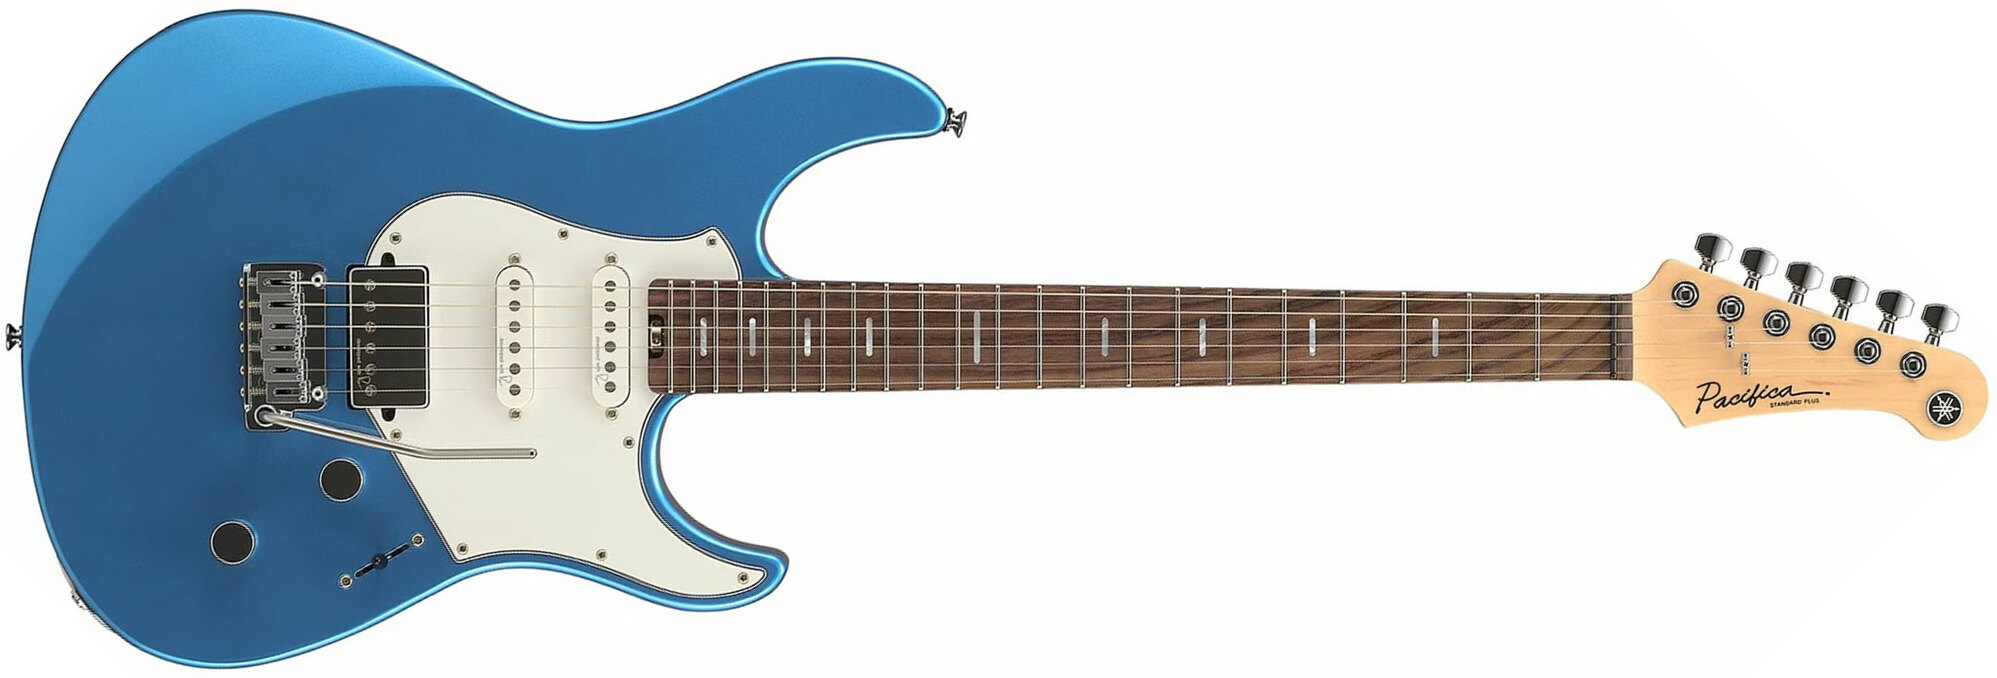 Yamaha Pacifica Standard Plus Pacs+12 Trem Hss Rw - Sparkle Blue - E-Gitarre in Str-Form - Main picture